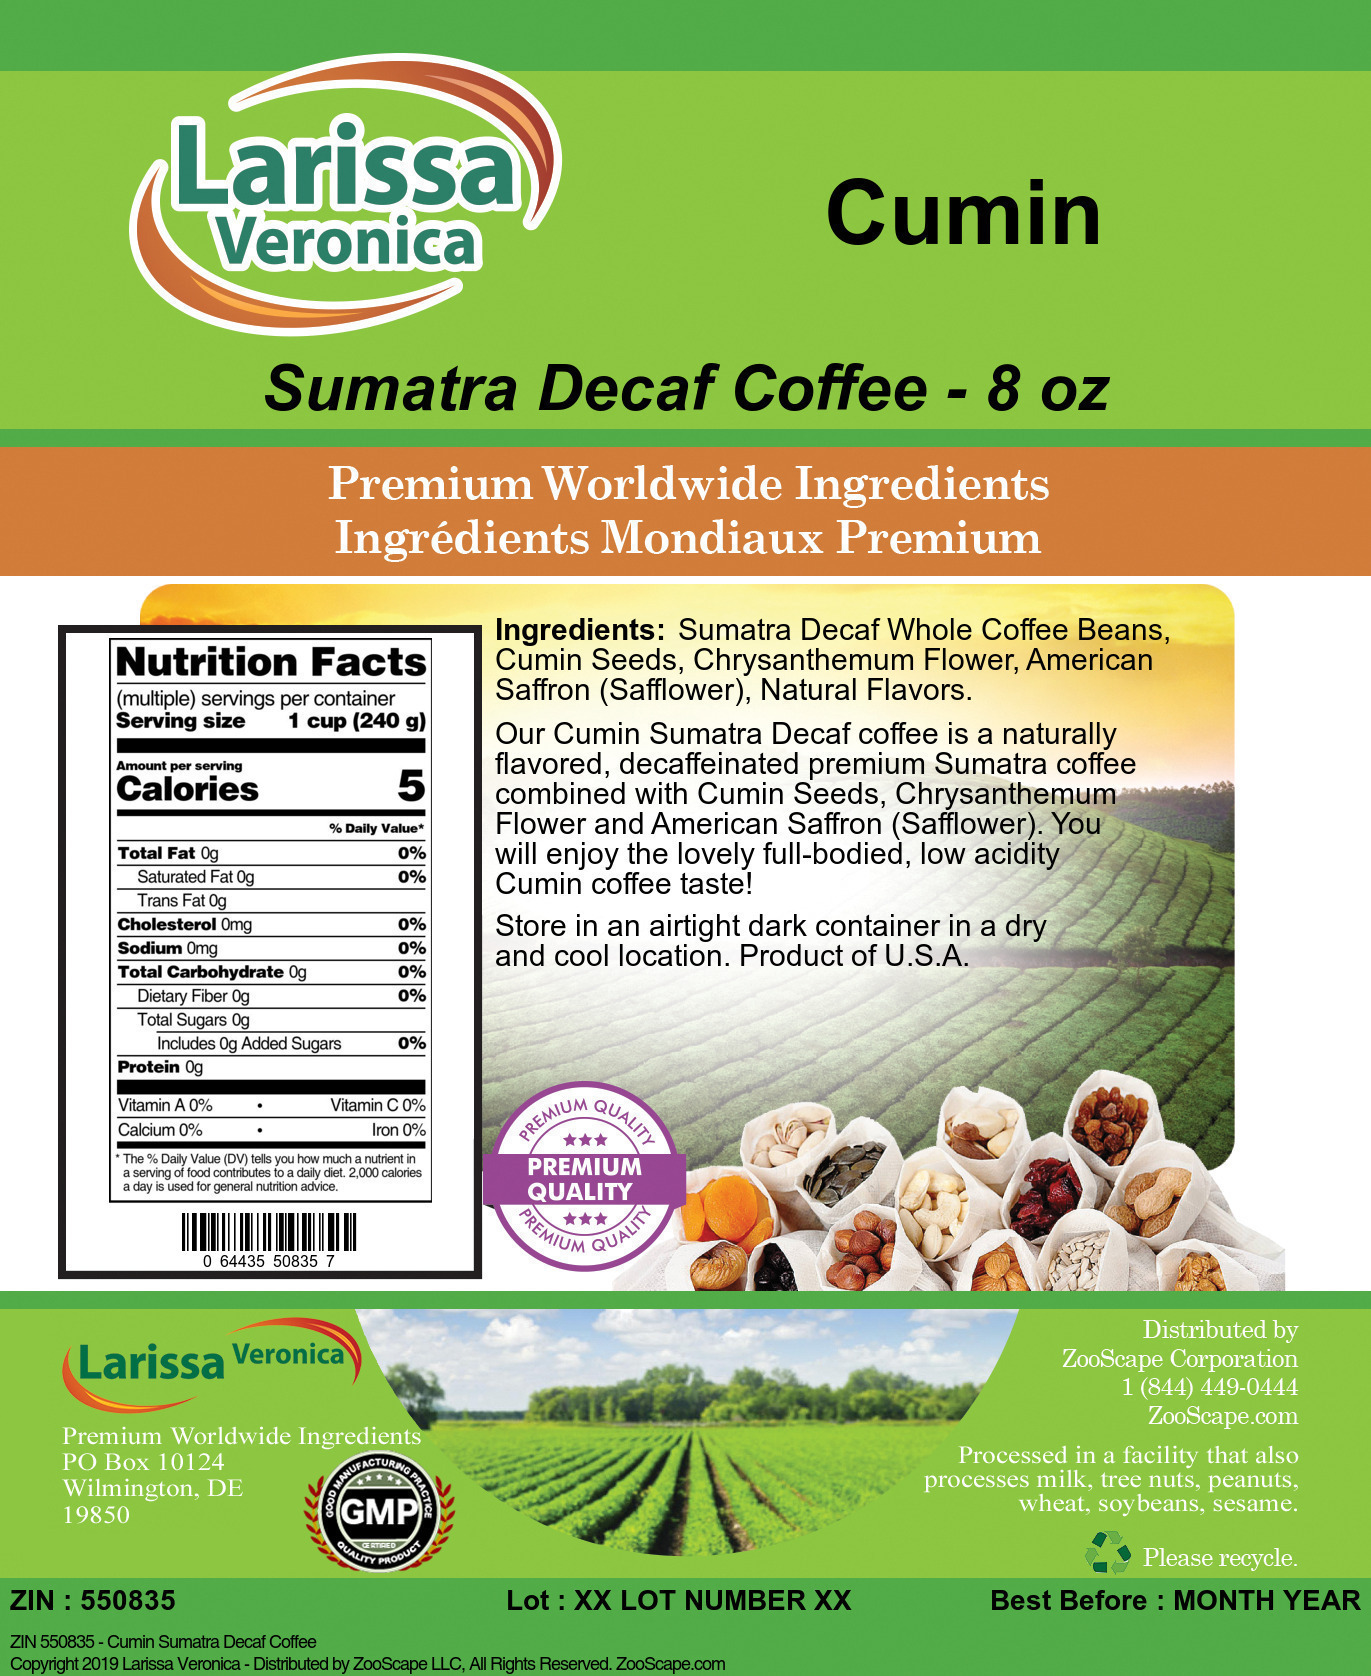 Cumin Sumatra Decaf Coffee - Label